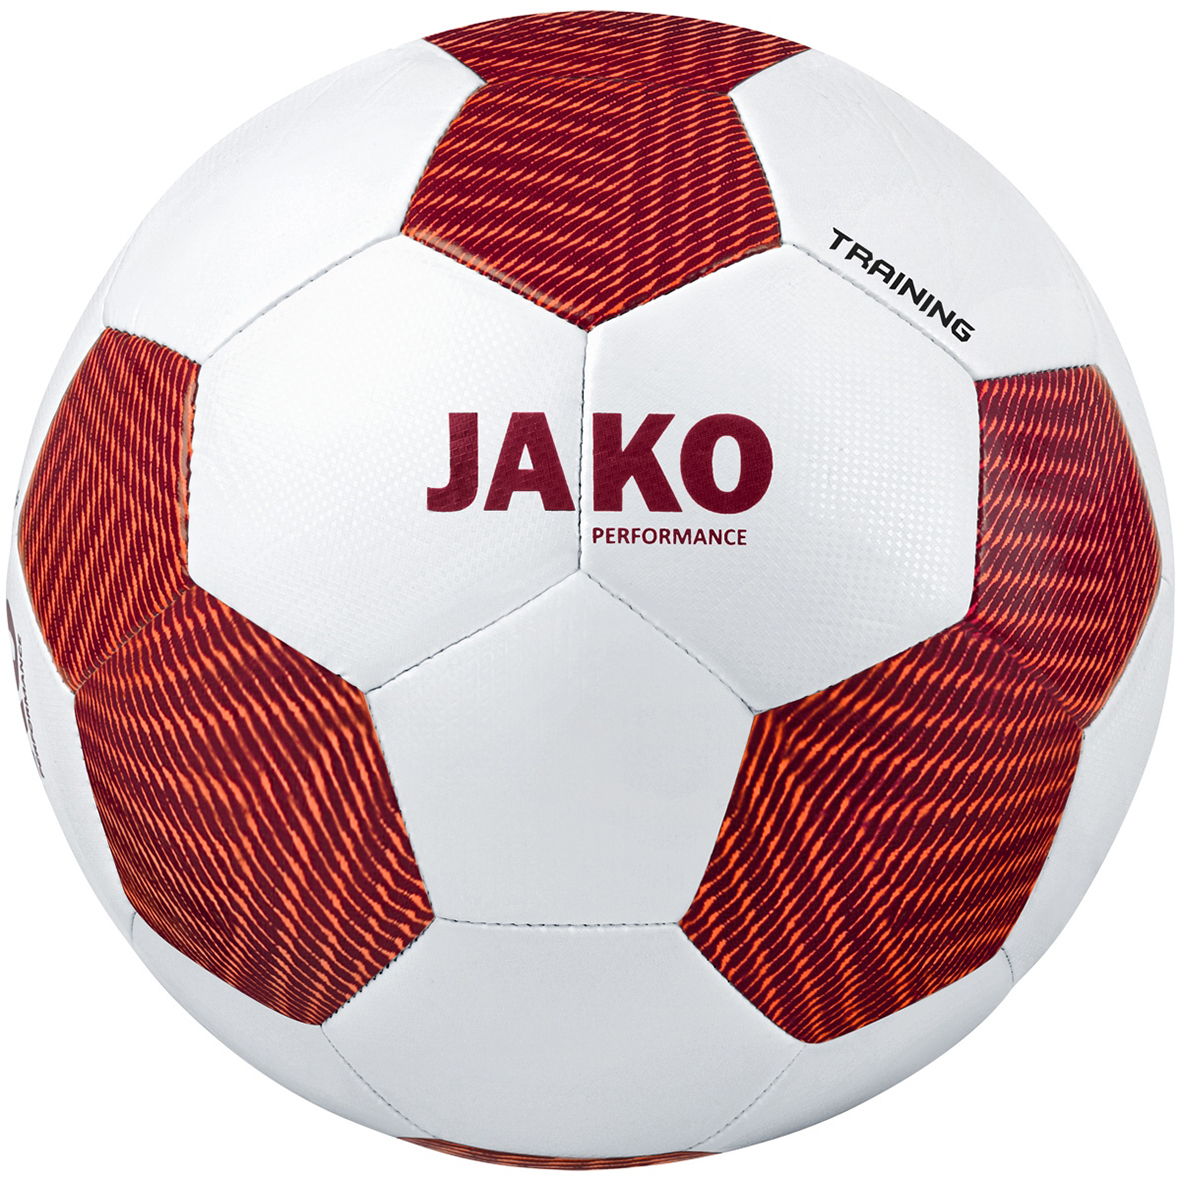 TRAINING BALL JAKO STRIKER 2.0, WHITE-WINE RED-NEON ORANGE.